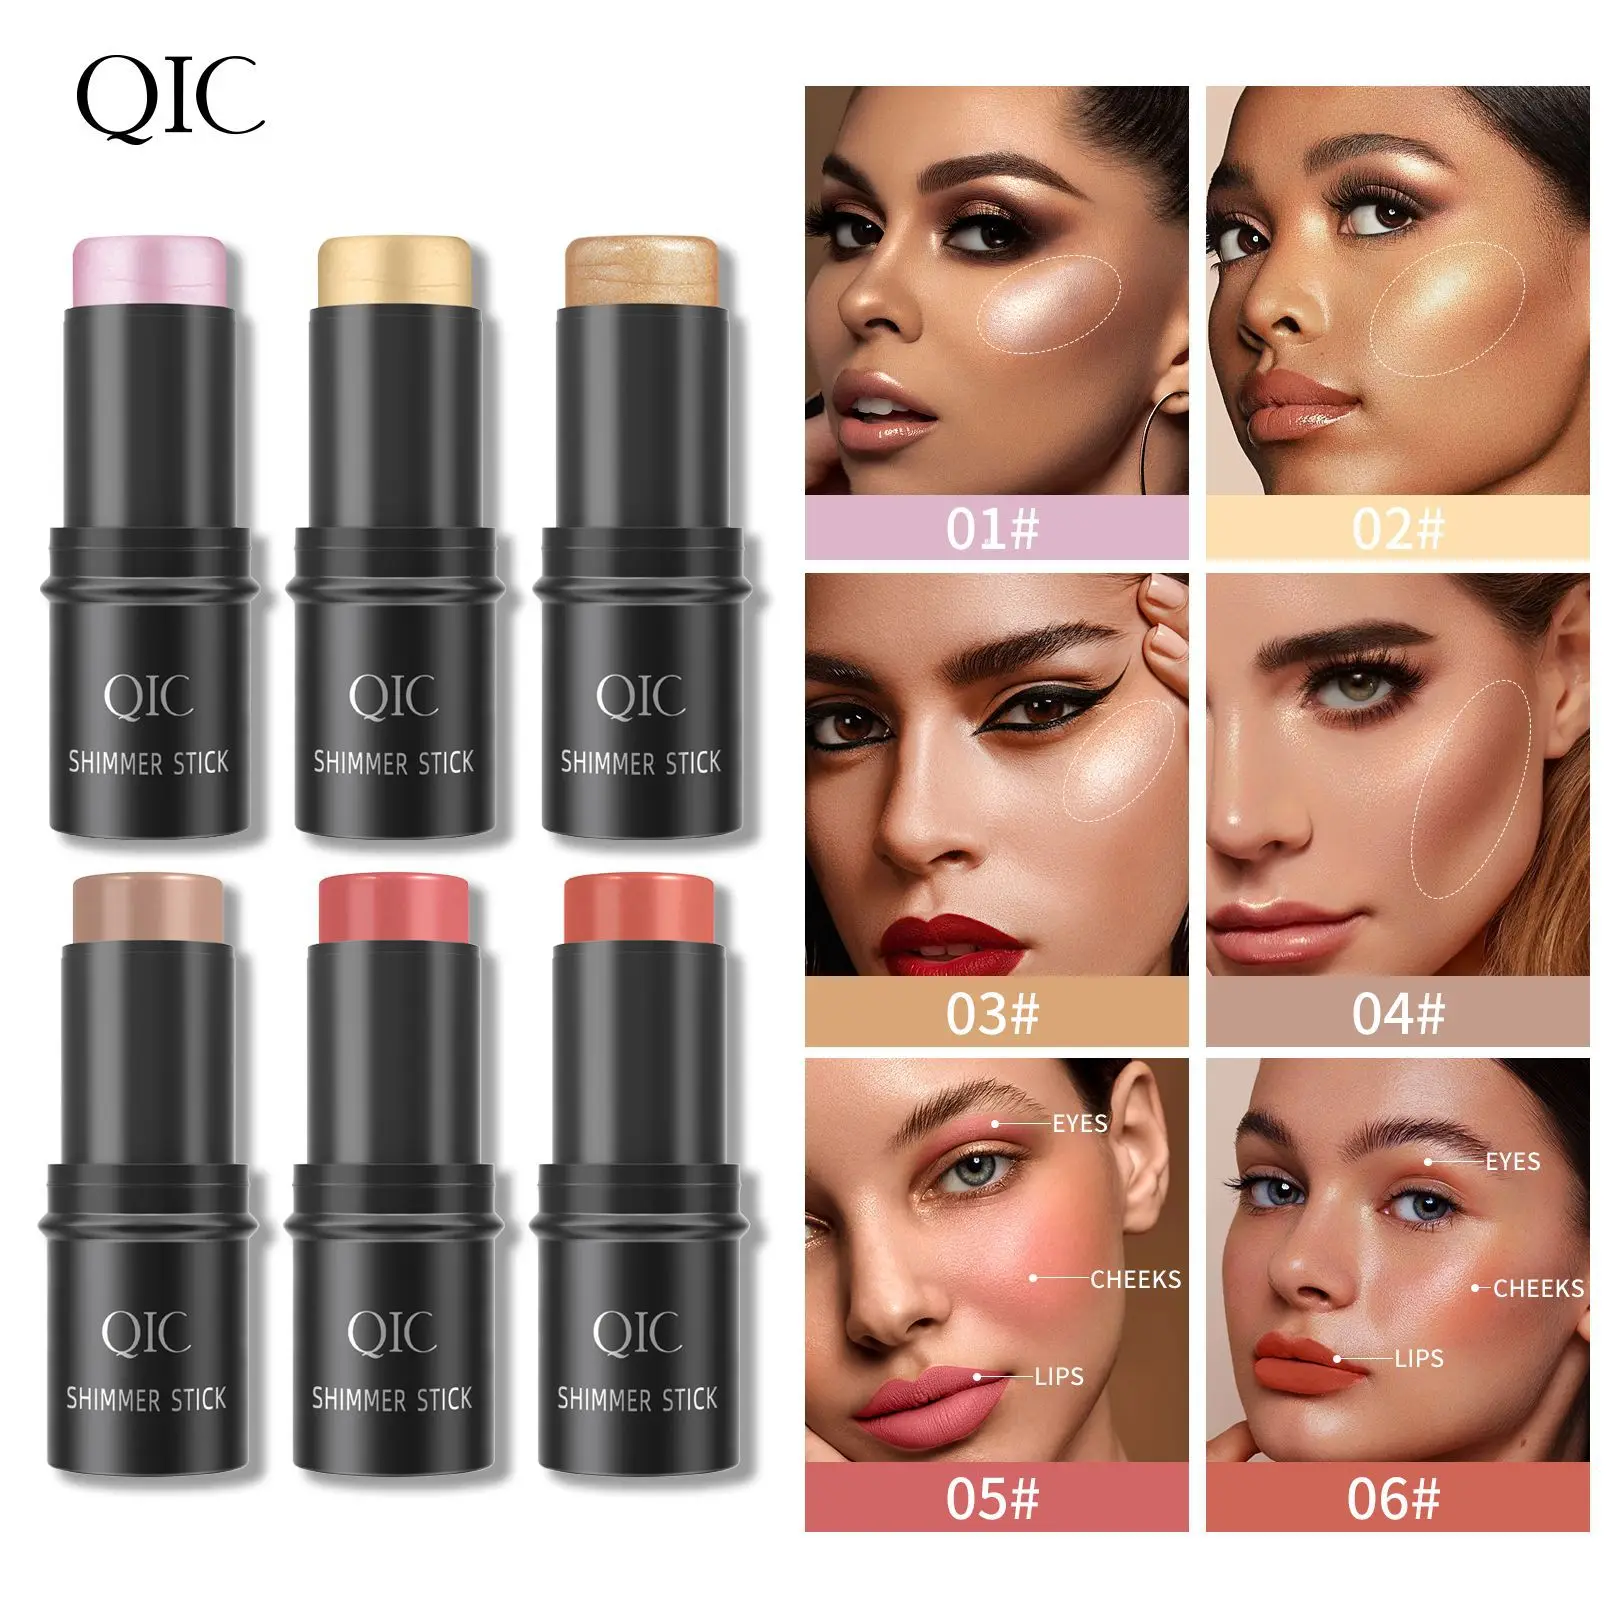 

QIC Qni цветная подсветка ремонт осветление тени палка трехмерная основа для лица Лежащая шелкография ручка румяна-стик макияж